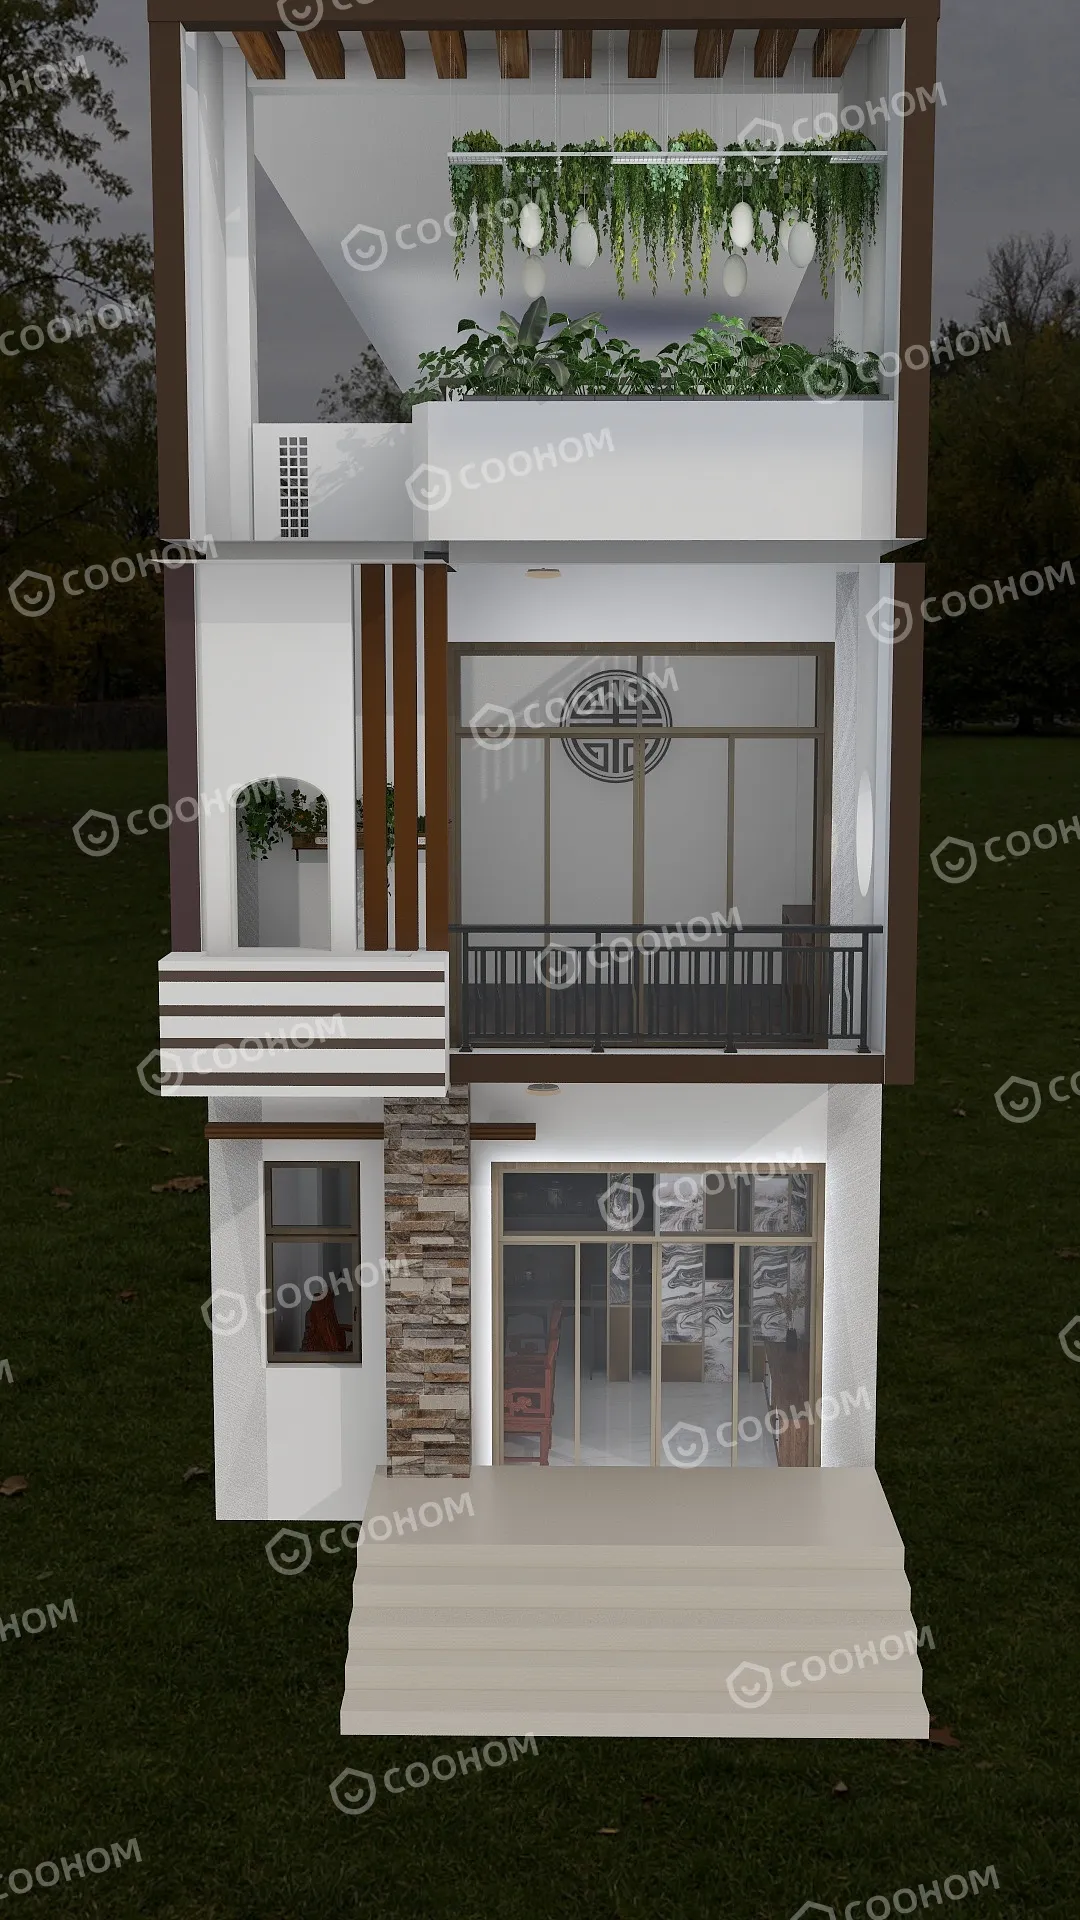 ellienguyen1506的装修设计方案:Design my home, in a small village